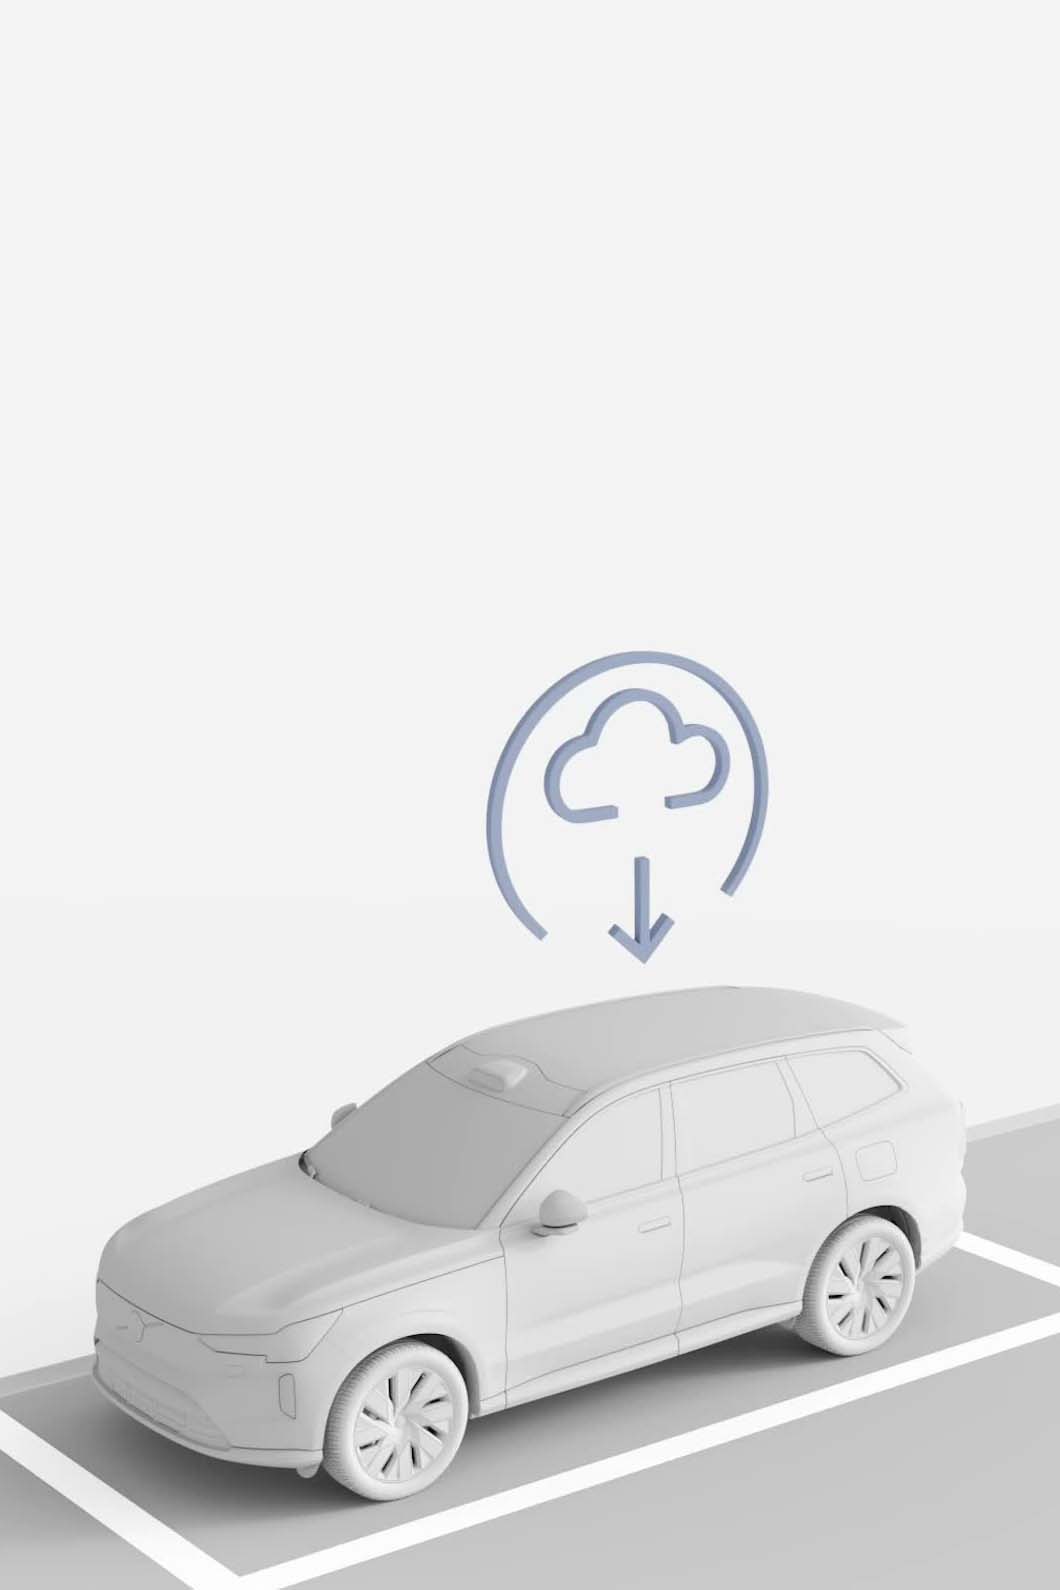 Ilustrație a unei mașini Volvo care primește o actualizare software din cloud.